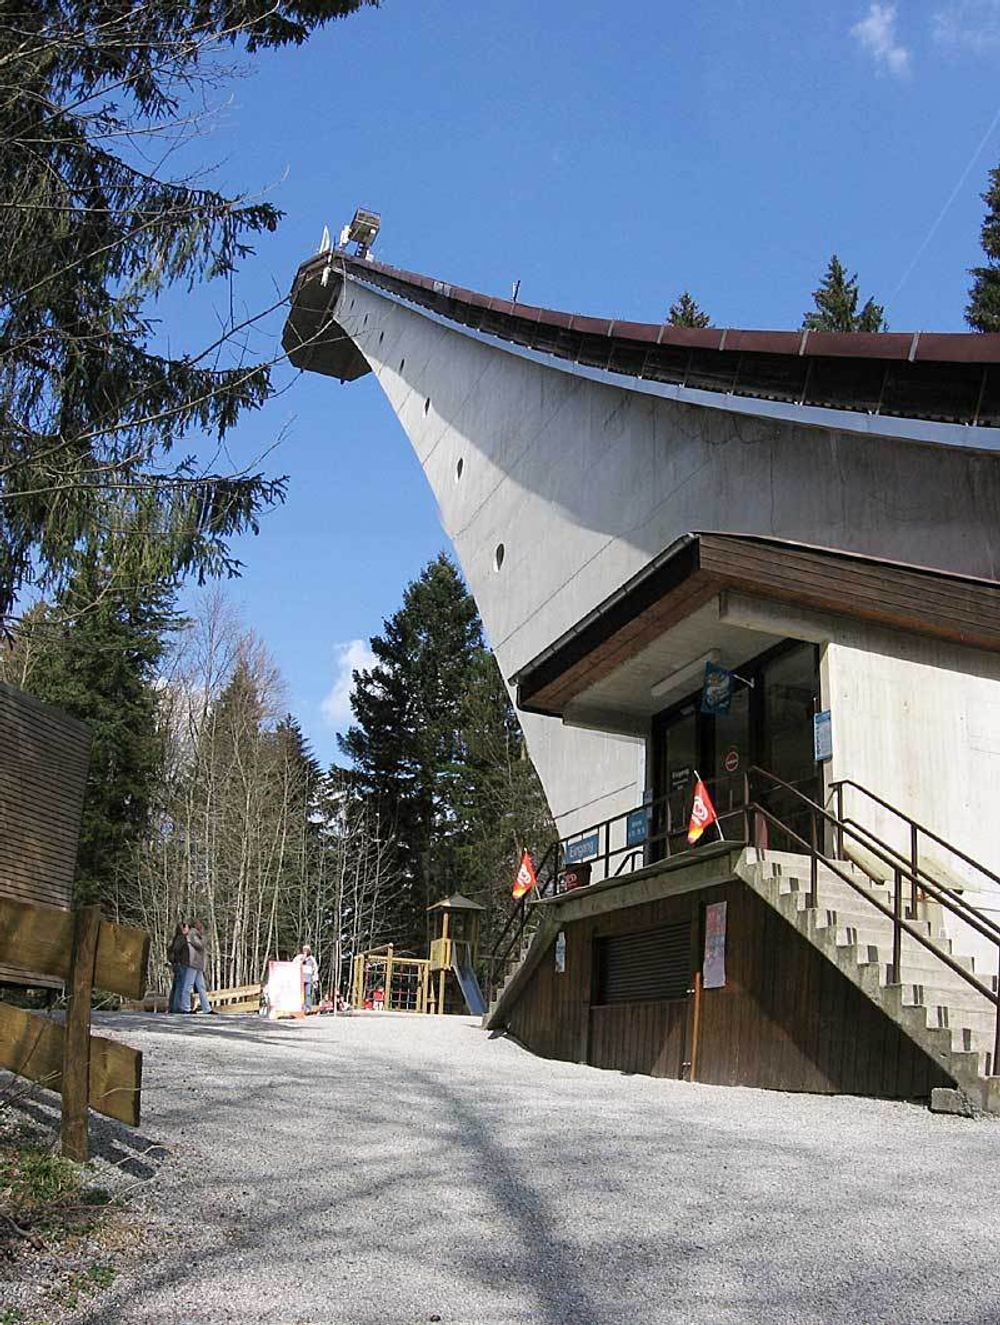 RENOVERT: Heini-Klopfer-Skiflugschanze ble tegnet av den lokale Oberstdorf-arkitekten Claus-Peter Horle. Bakken ble renovert i 1973.